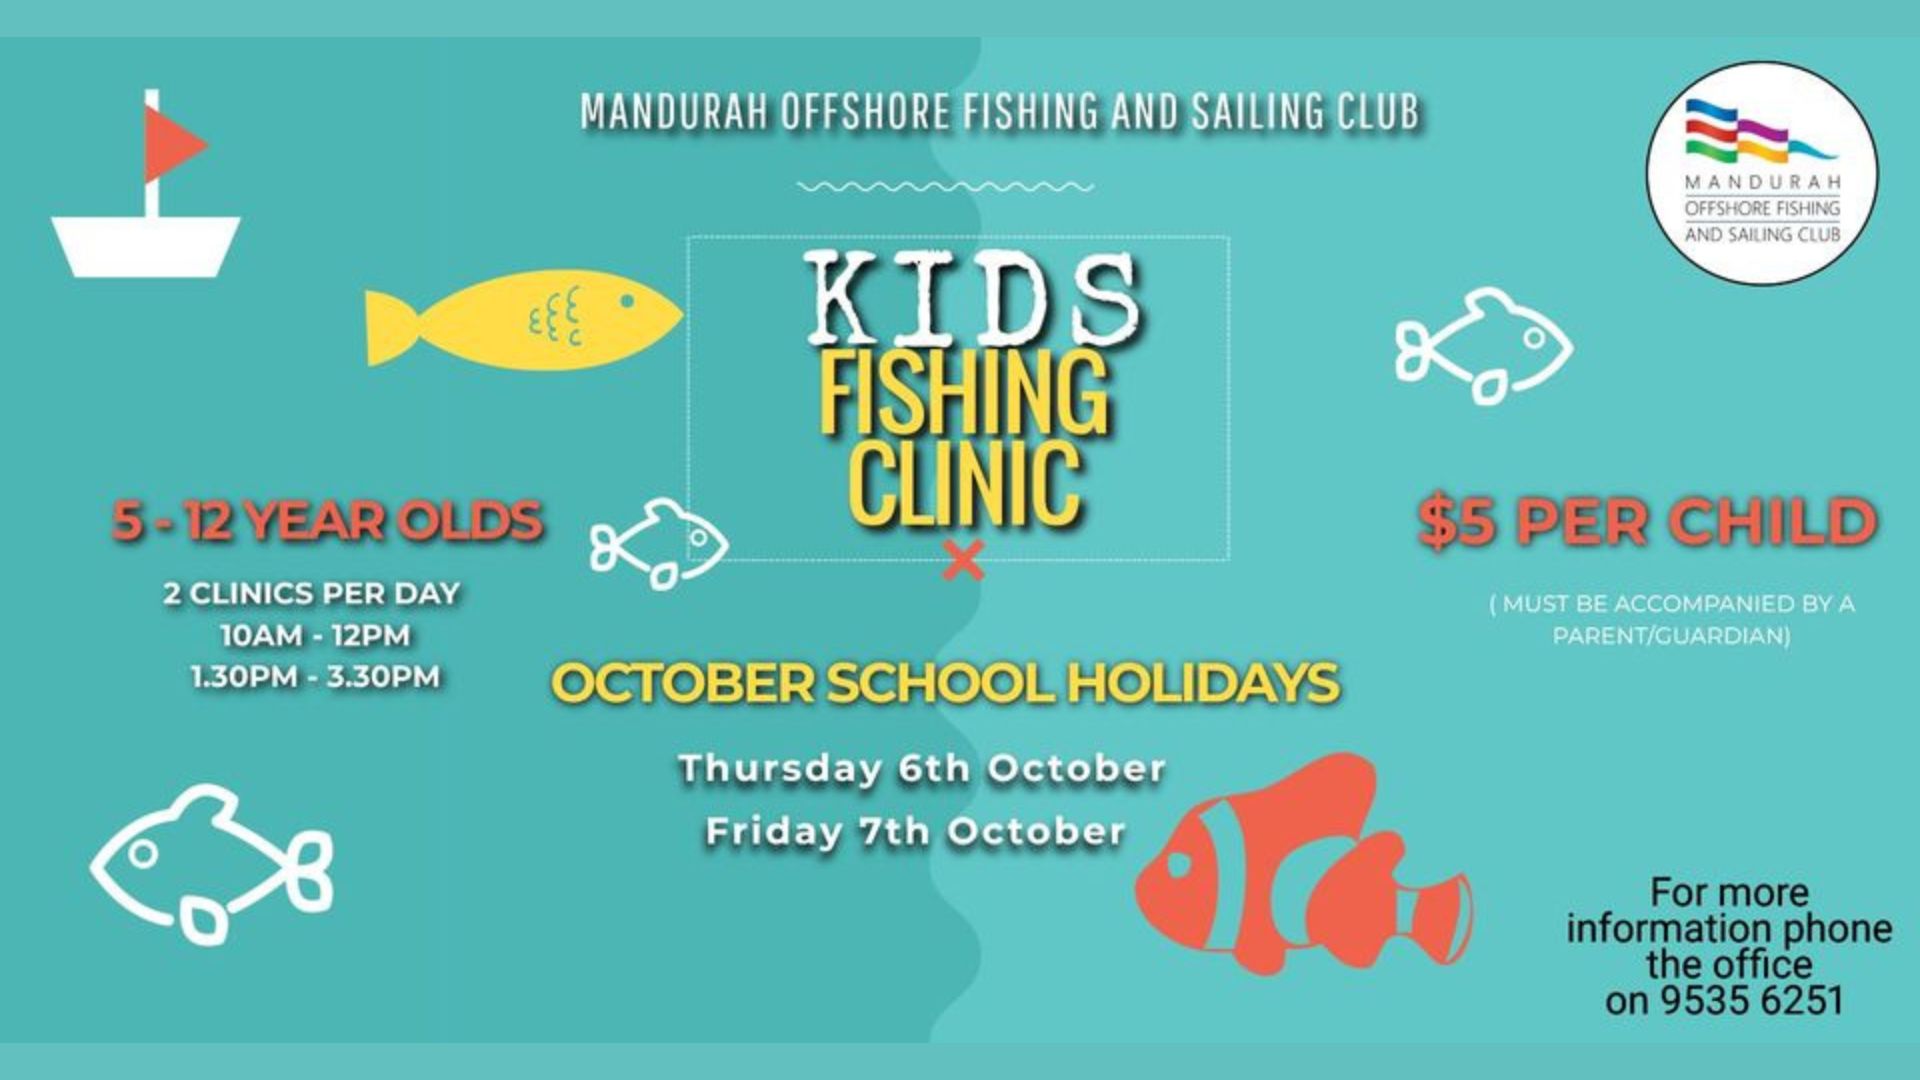 Fishing Clinics at Mandurah Offshore Fishing and Sailing Club